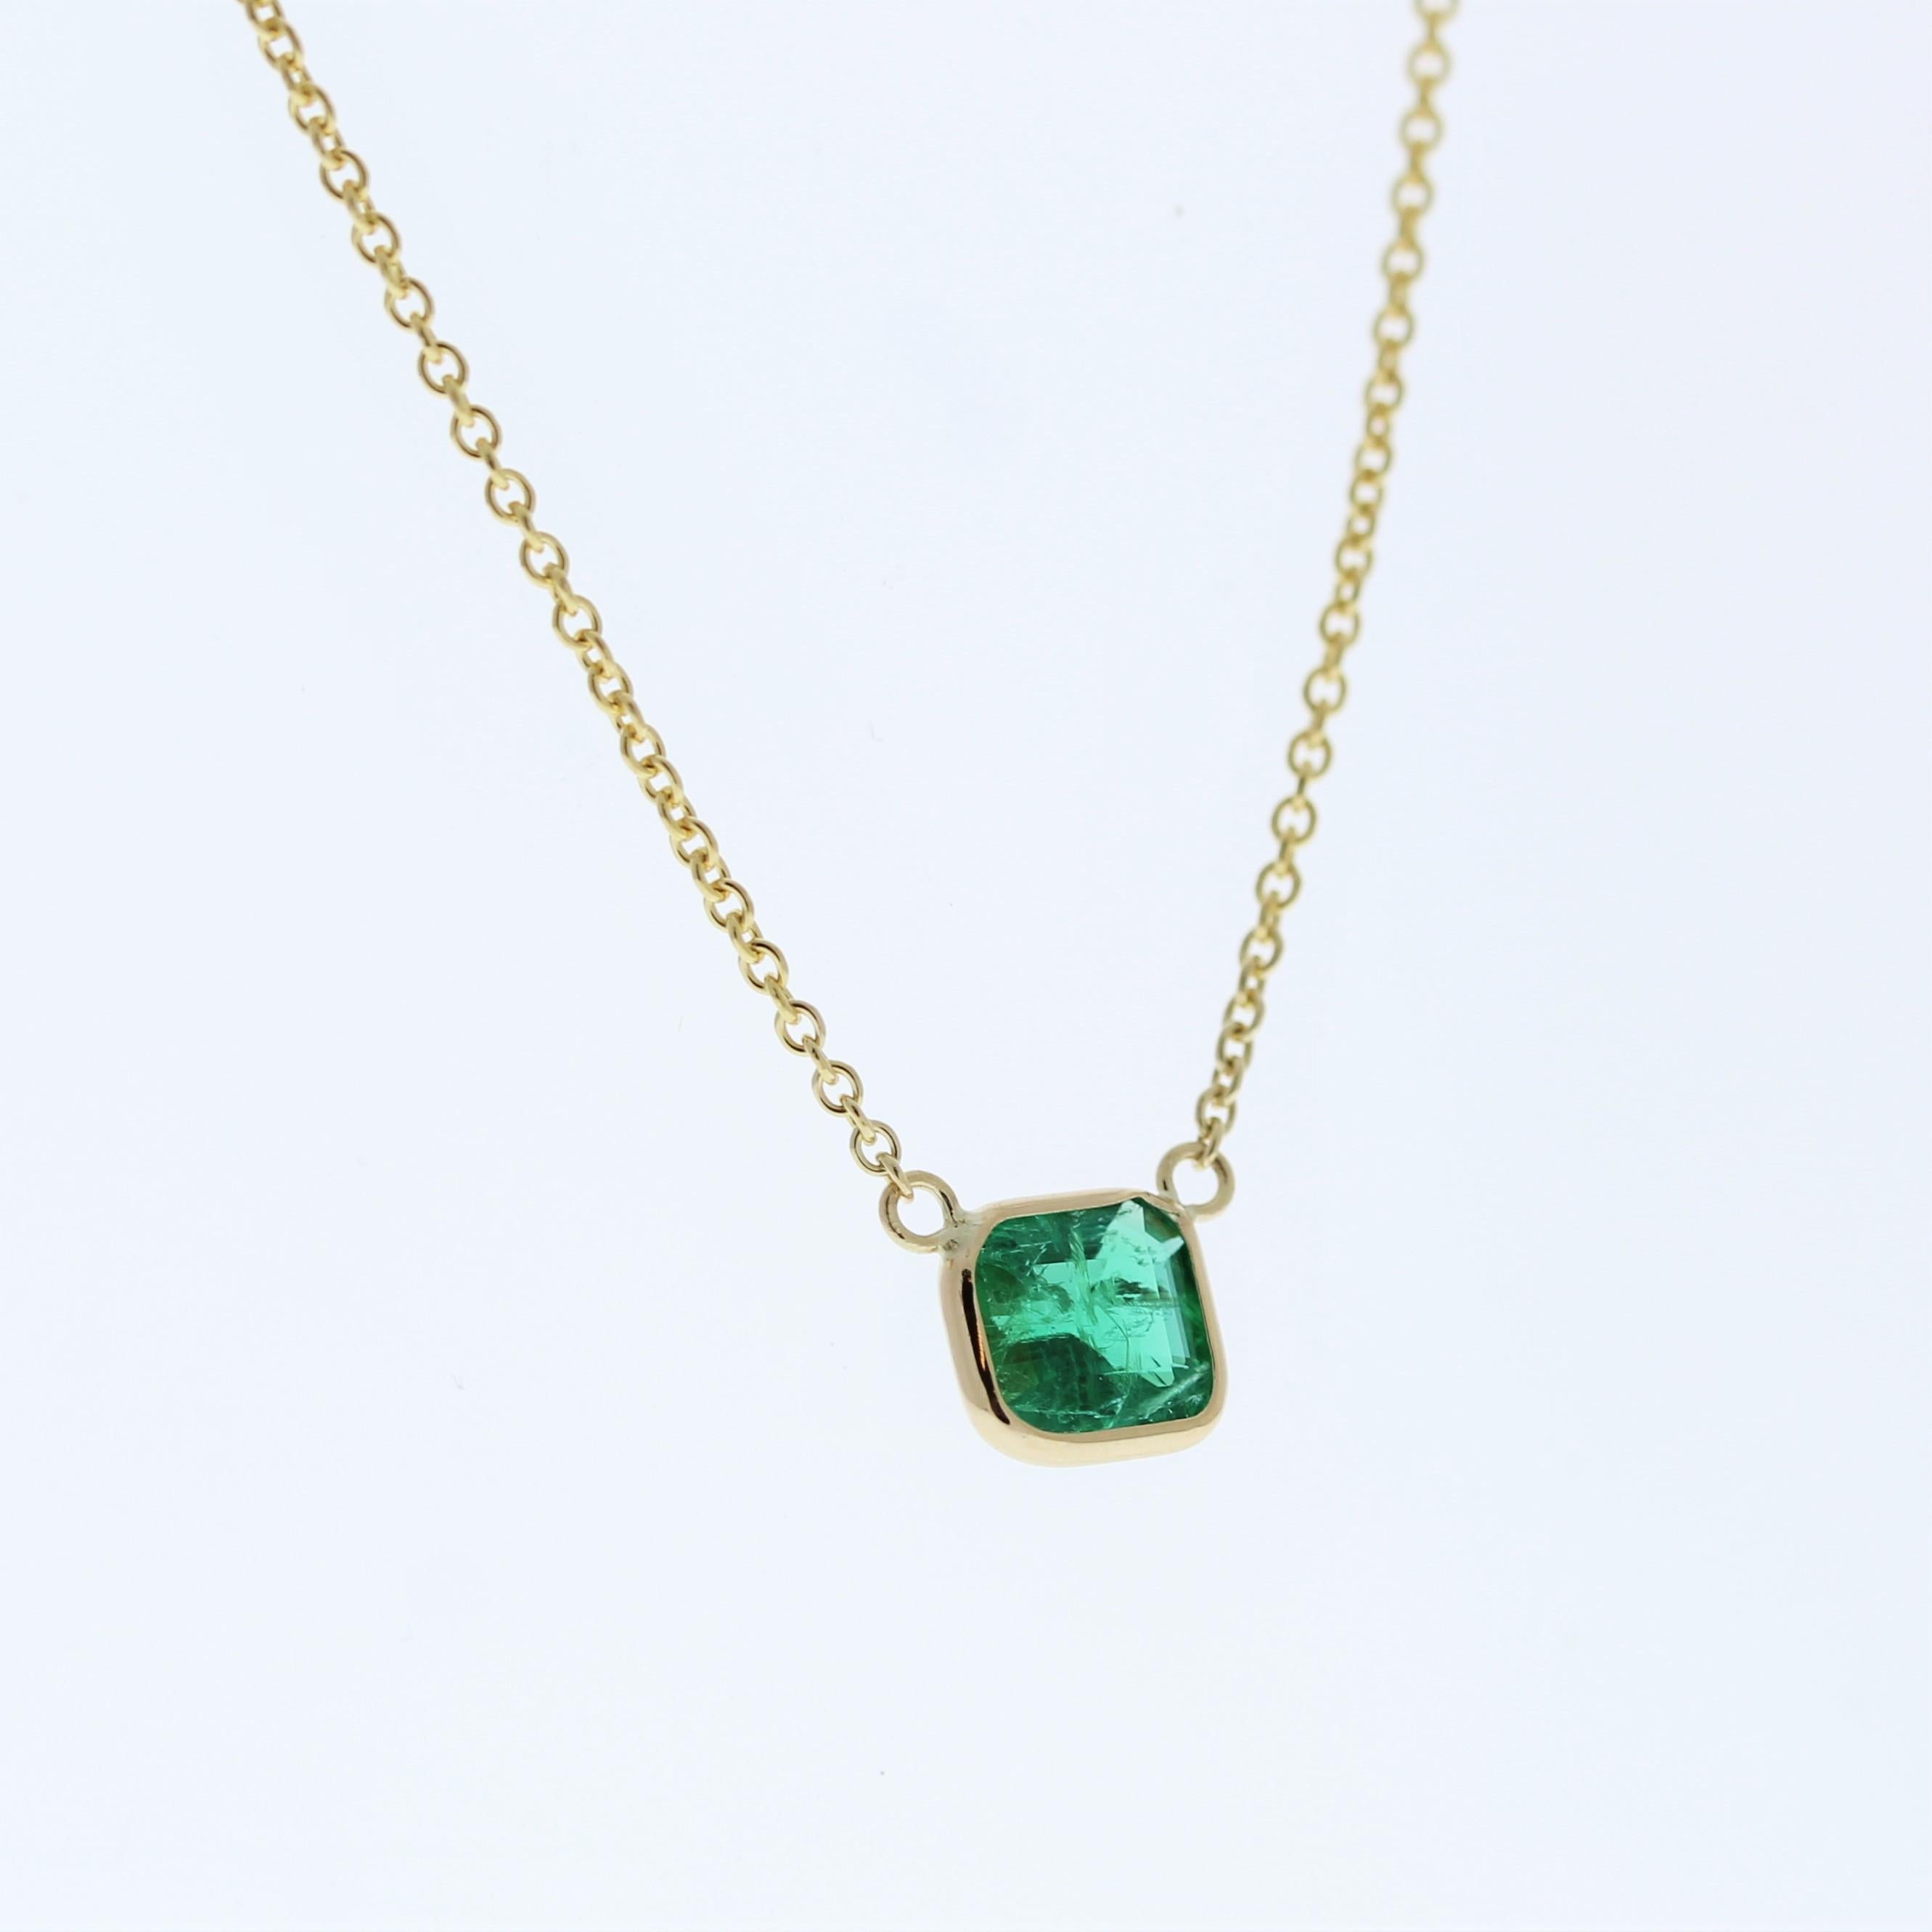 Die Halskette besteht aus einem grünen Smaragd im Asscher-Schliff von 0,94 Karat, der in einem Anhänger oder einer Fassung aus 14 Karat Gelbgold gefasst ist. Der Asscher-Schliff und die leuchtend grüne Farbe des Smaragds in der Gelbgoldfassung